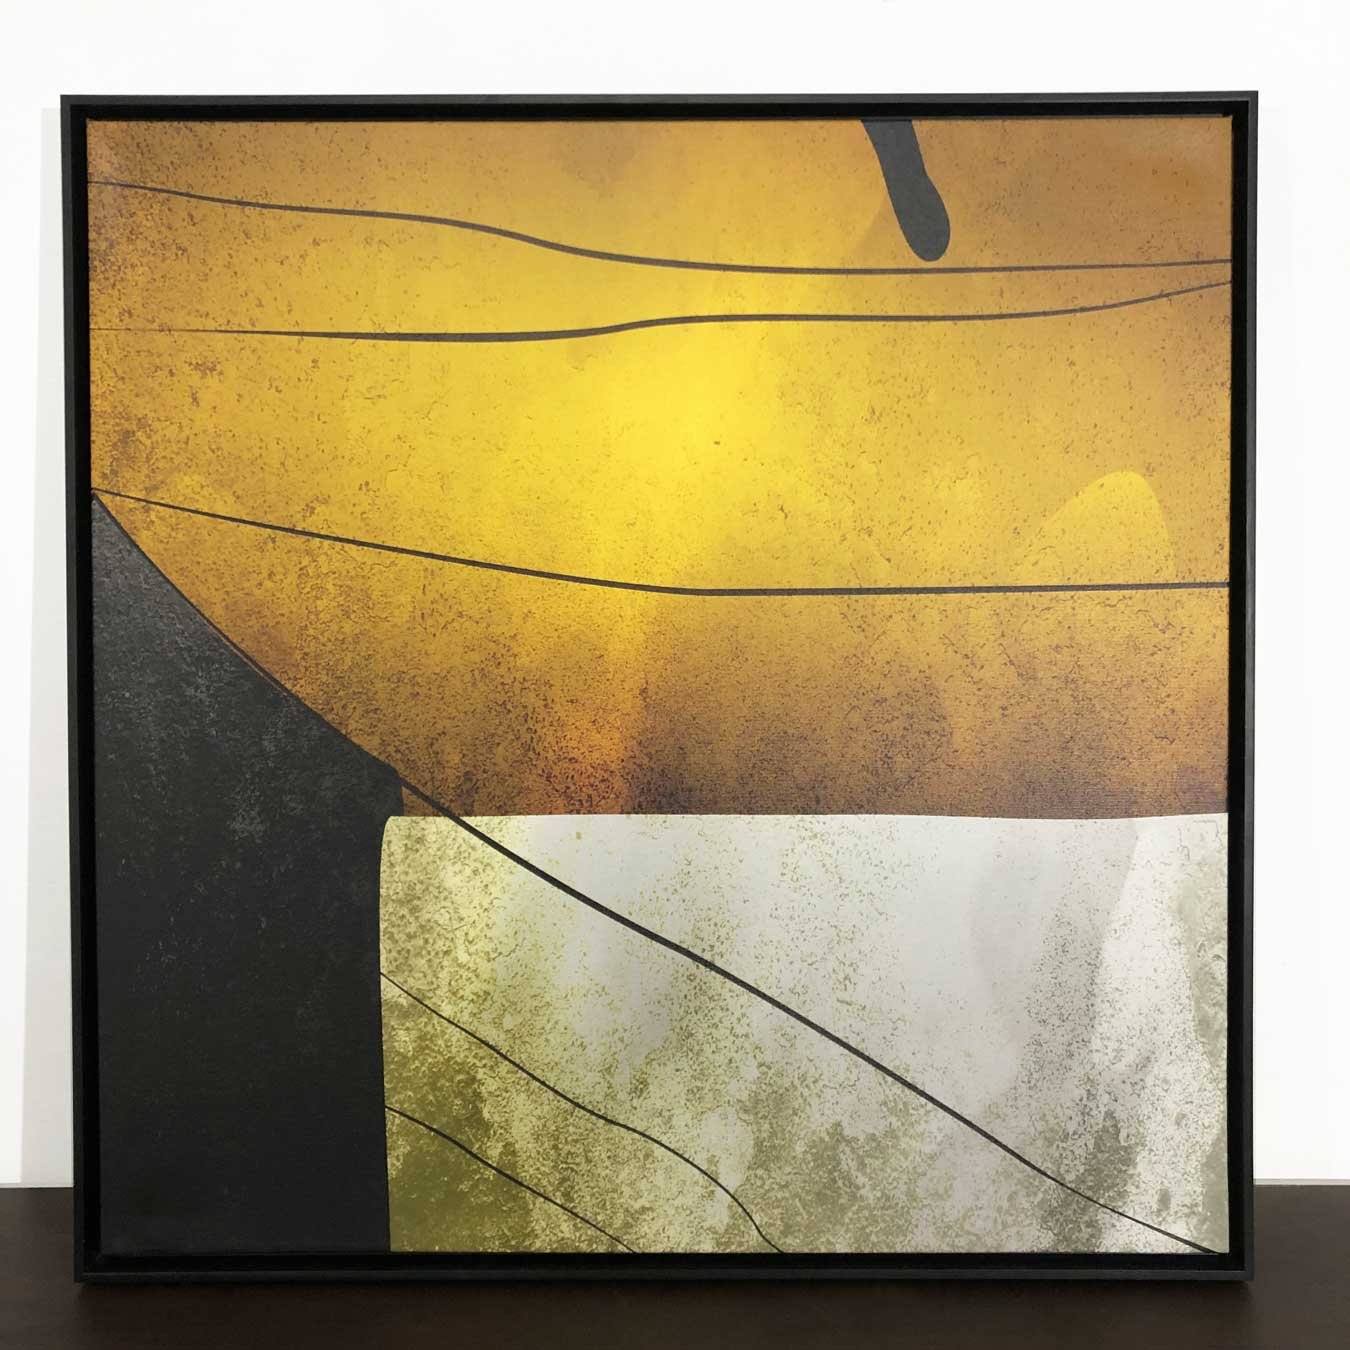 Tela Canvas Abstrata Moderna com Moldura Flutuante Preta - Decore com Estilo